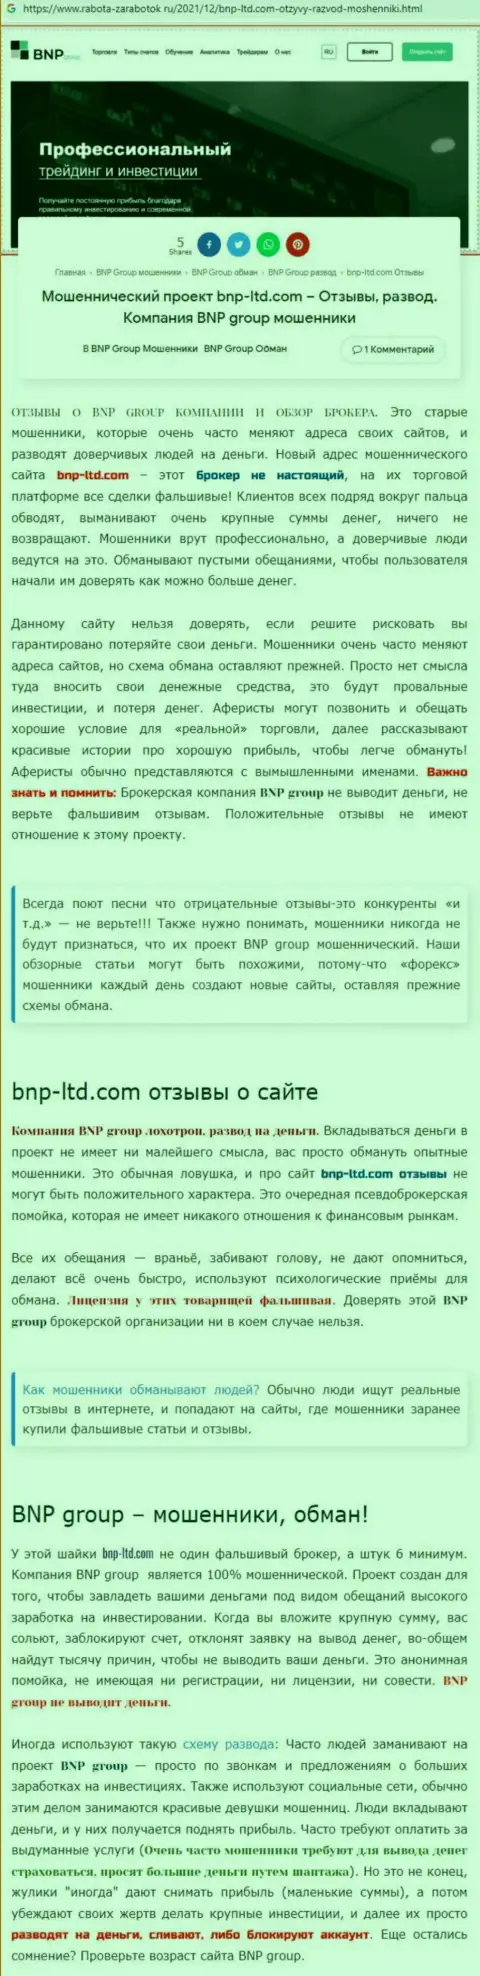 О перечисленных в компанию BNP-Ltd Net кровно нажитых можете забыть, прикарманивают все до последнего рубля (обзор неправомерных действий)